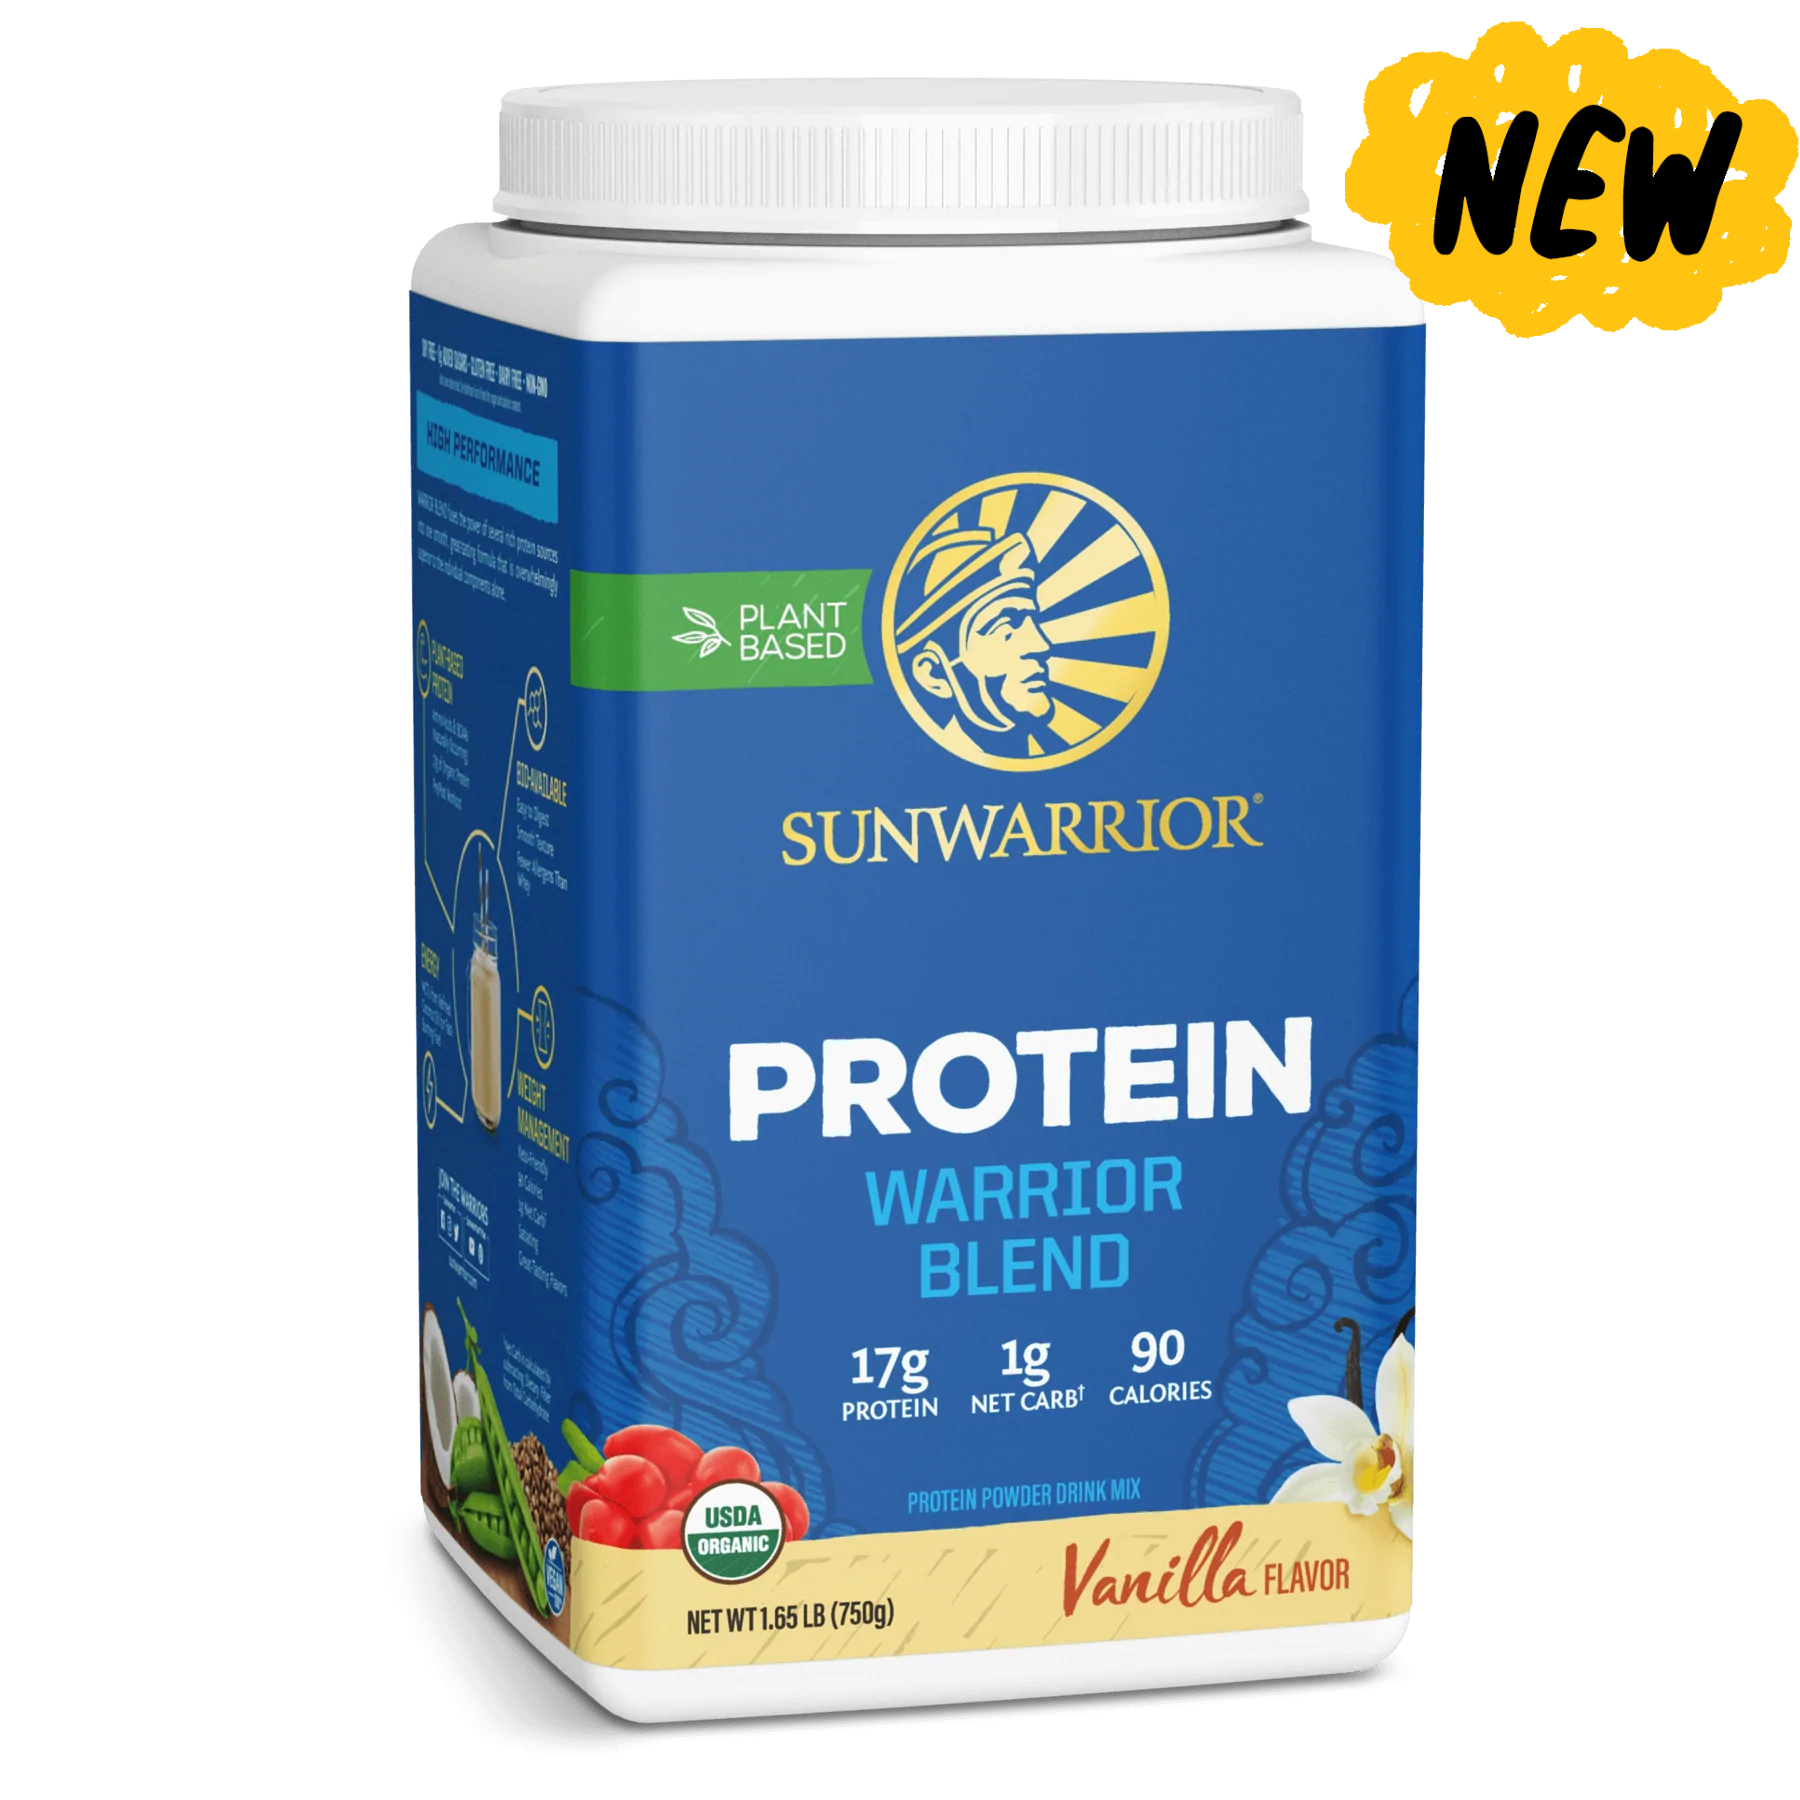 sunwarrior protein warrior blend 750g vani